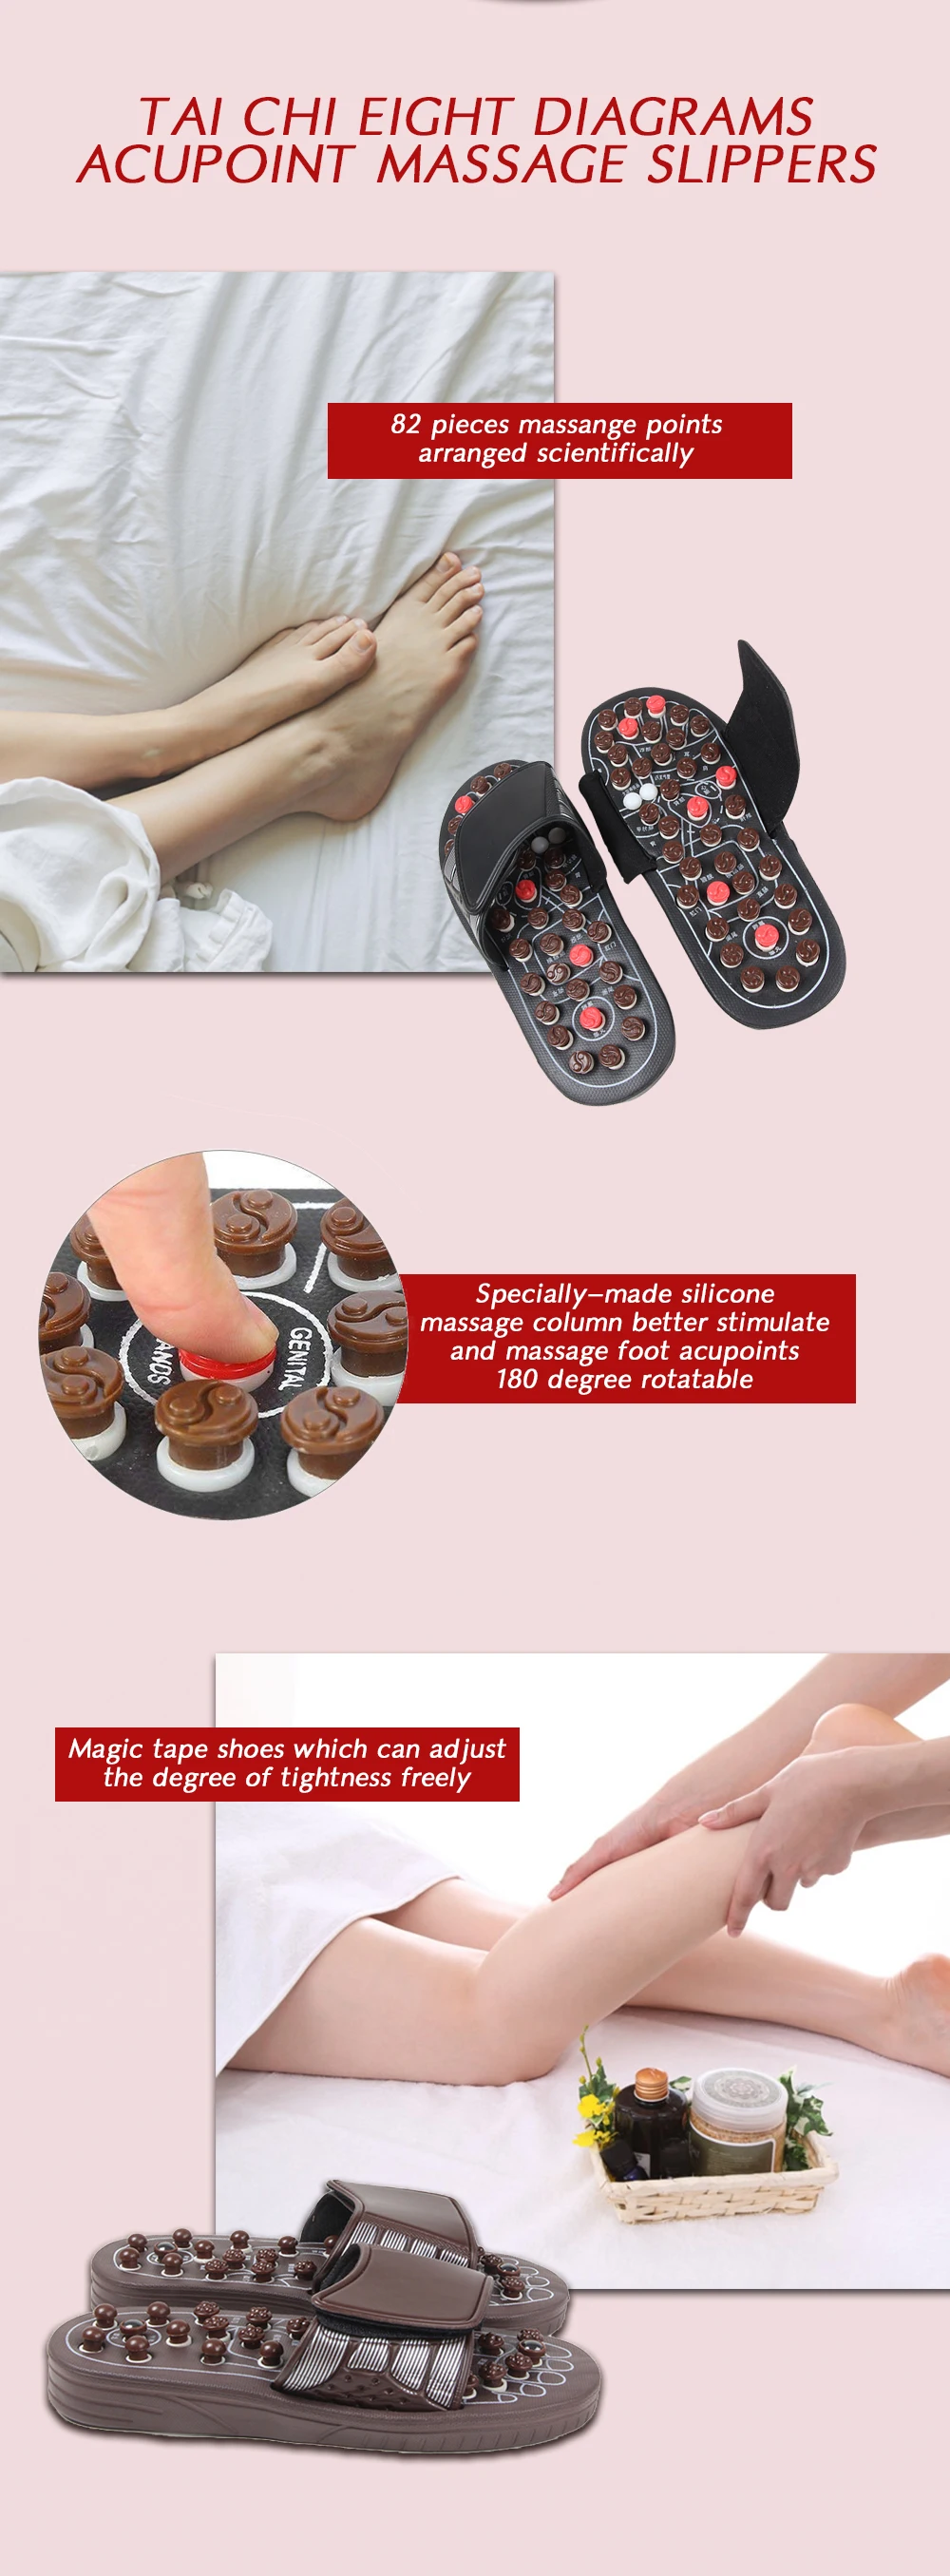 Массажные тапочки для стоп медицинская обувь сандалии массаж Рефлексология ног пожилых продукт ухода за здоровьем Массажная обувь